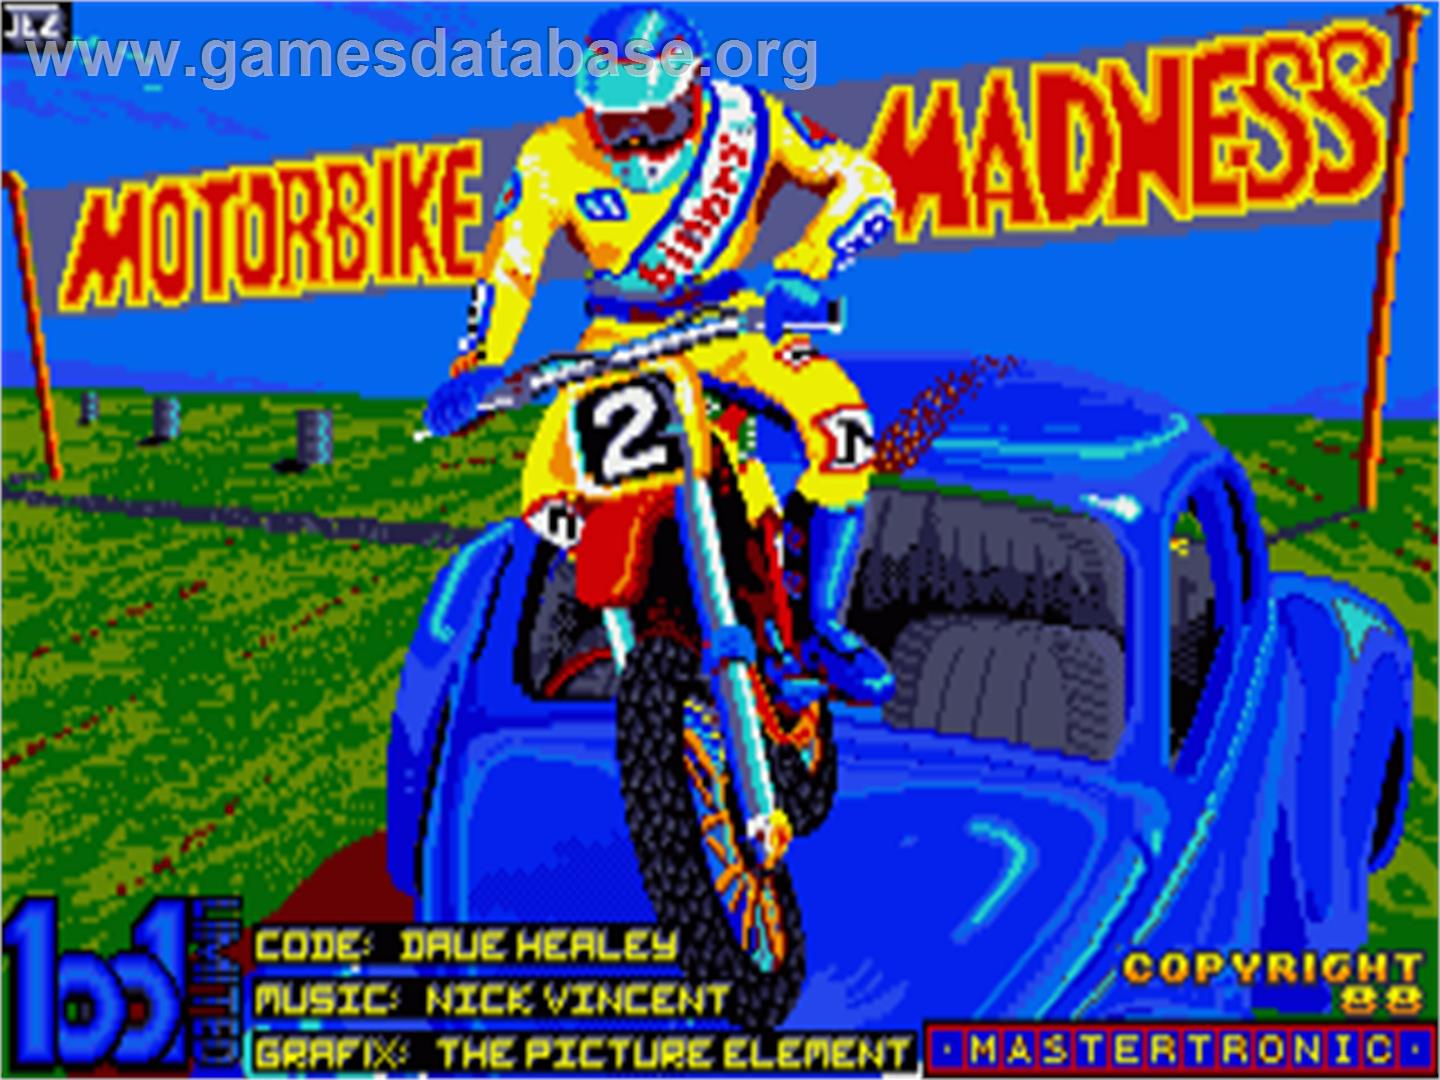 Motorbike Madness - Commodore Amiga - Artwork - Title Screen